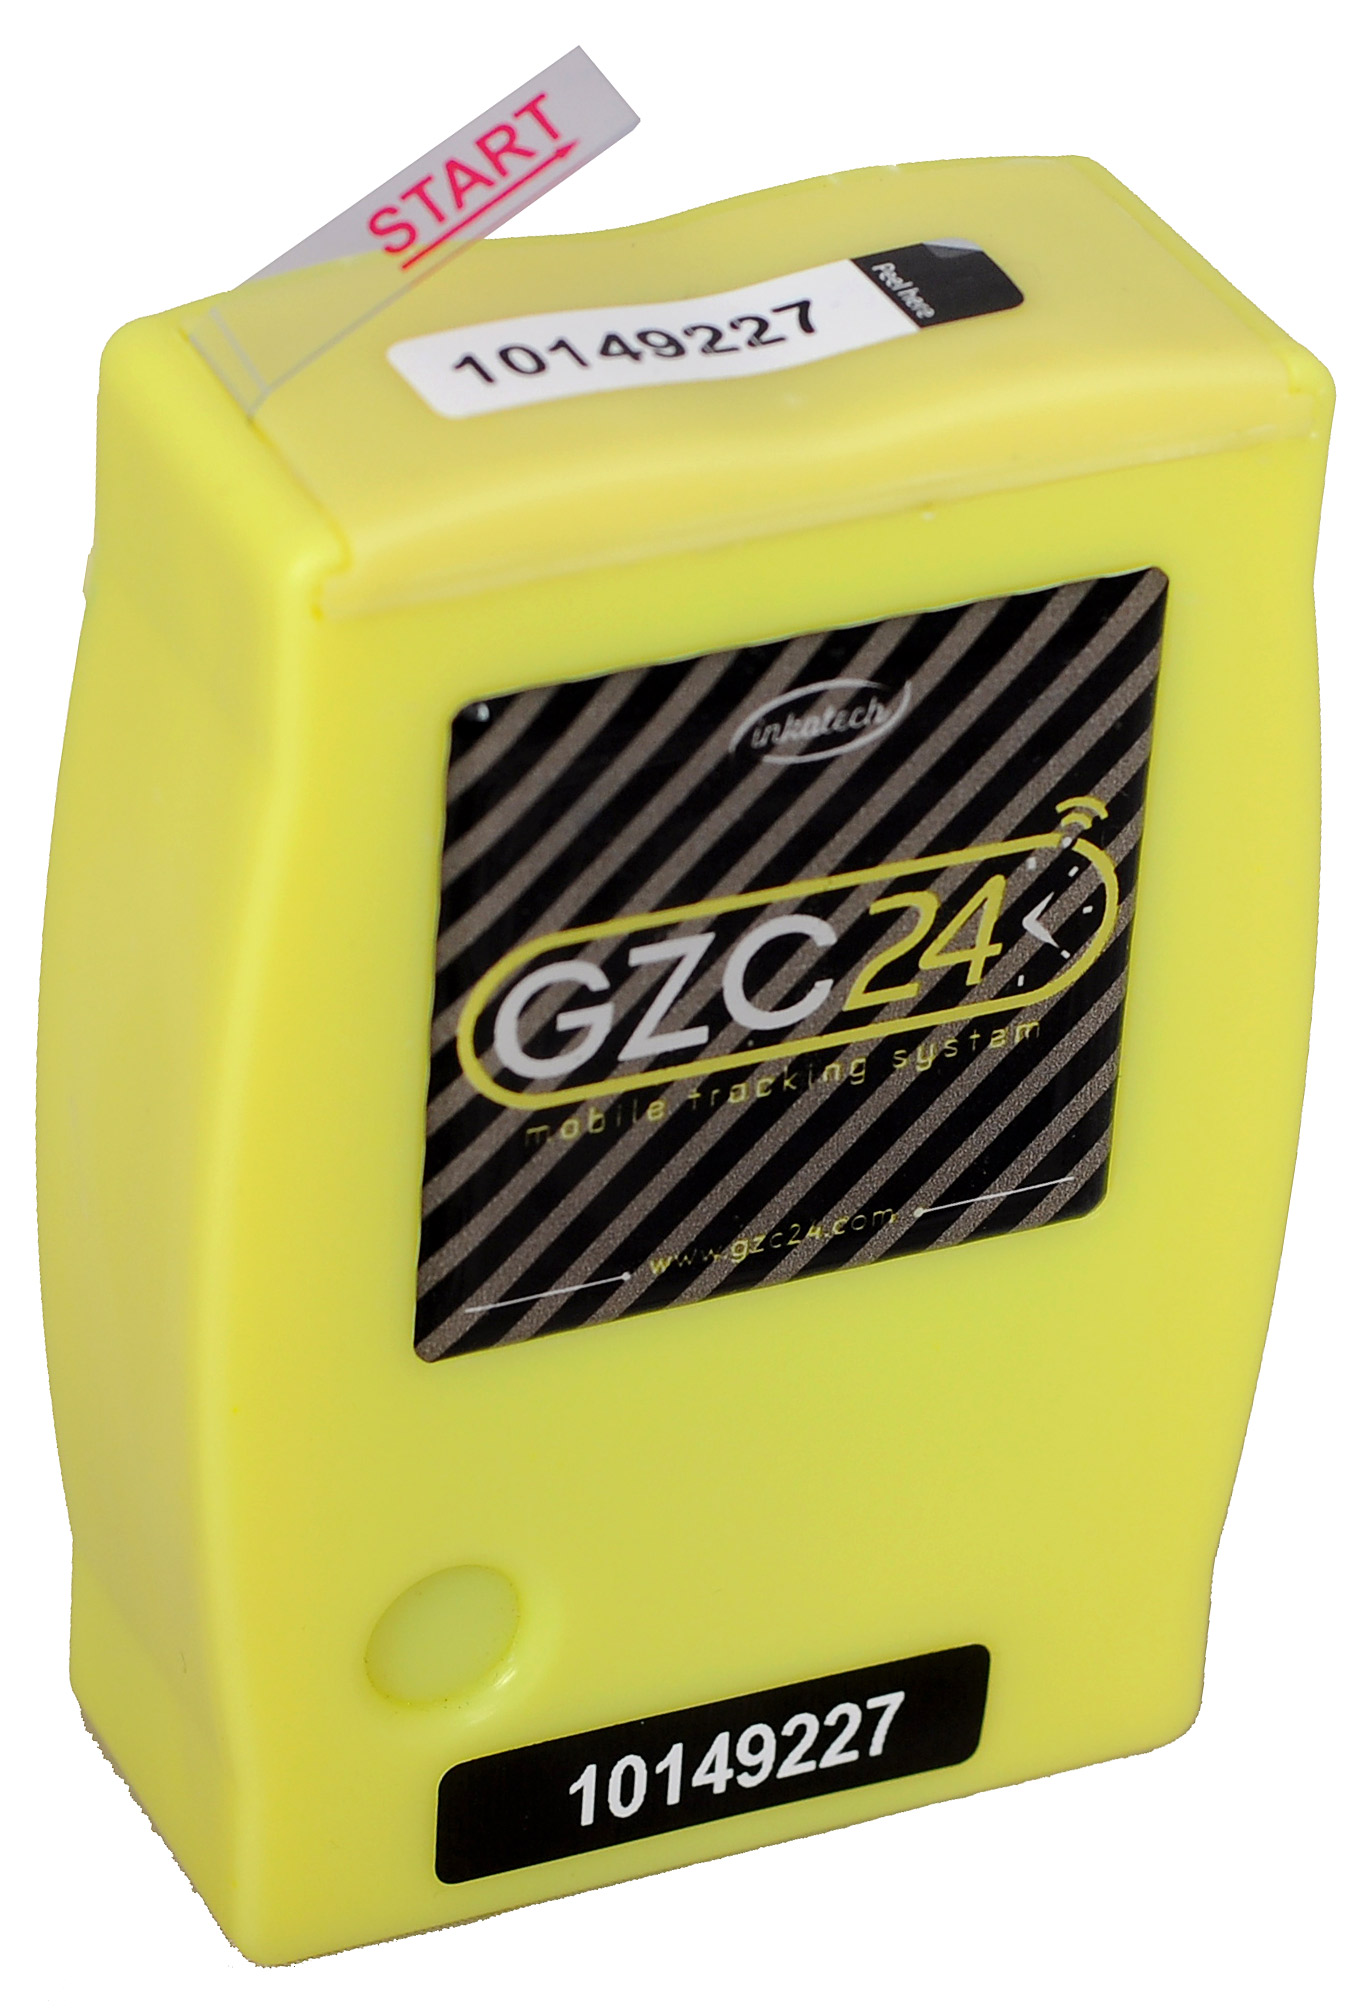 GZC24 mobil sıcaklık ve konum takip cihazı